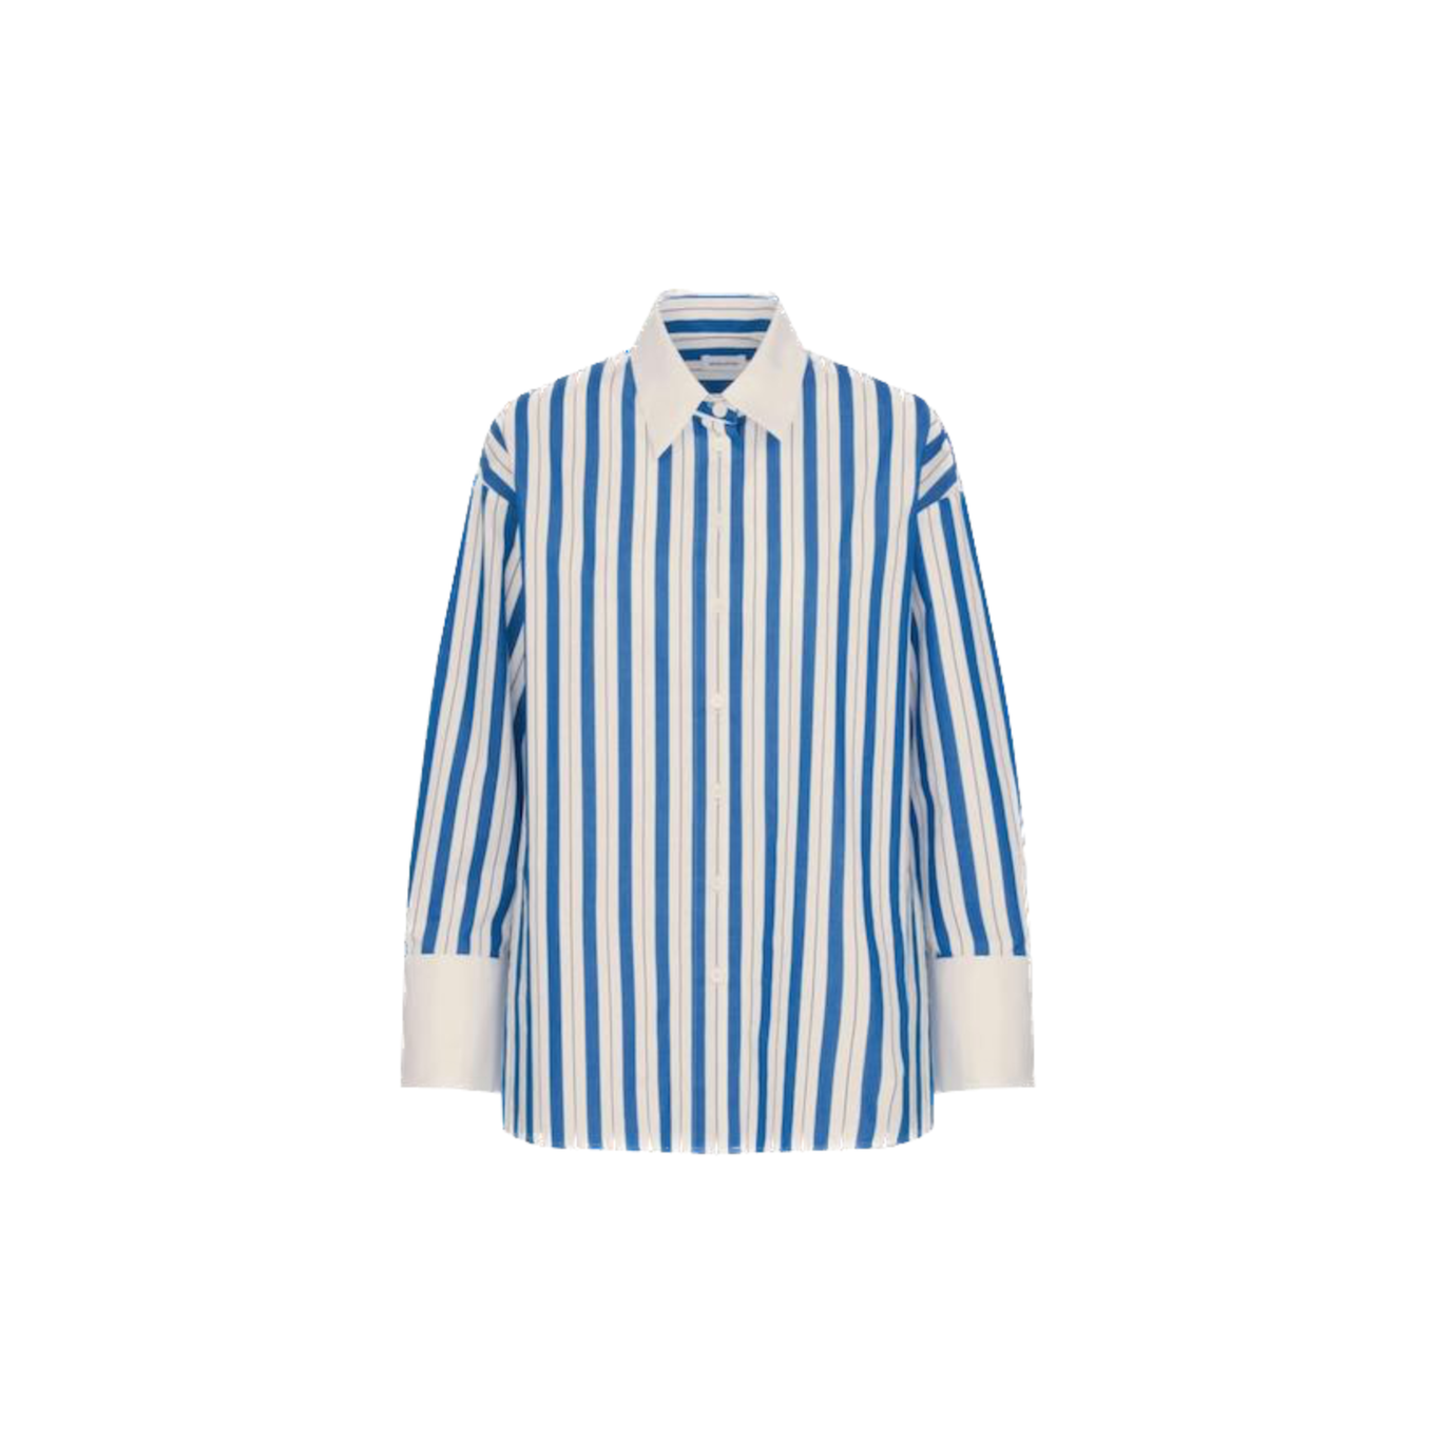 Mit der Bluse sind Modeliebhaber:innen auf dem richtigen Streifen! Das überlange Hemd mit blauem Muster bringt lässige Eleganz in den Kleiderschrank. Von Seidensticker, kostet etwa 120 Euro. 